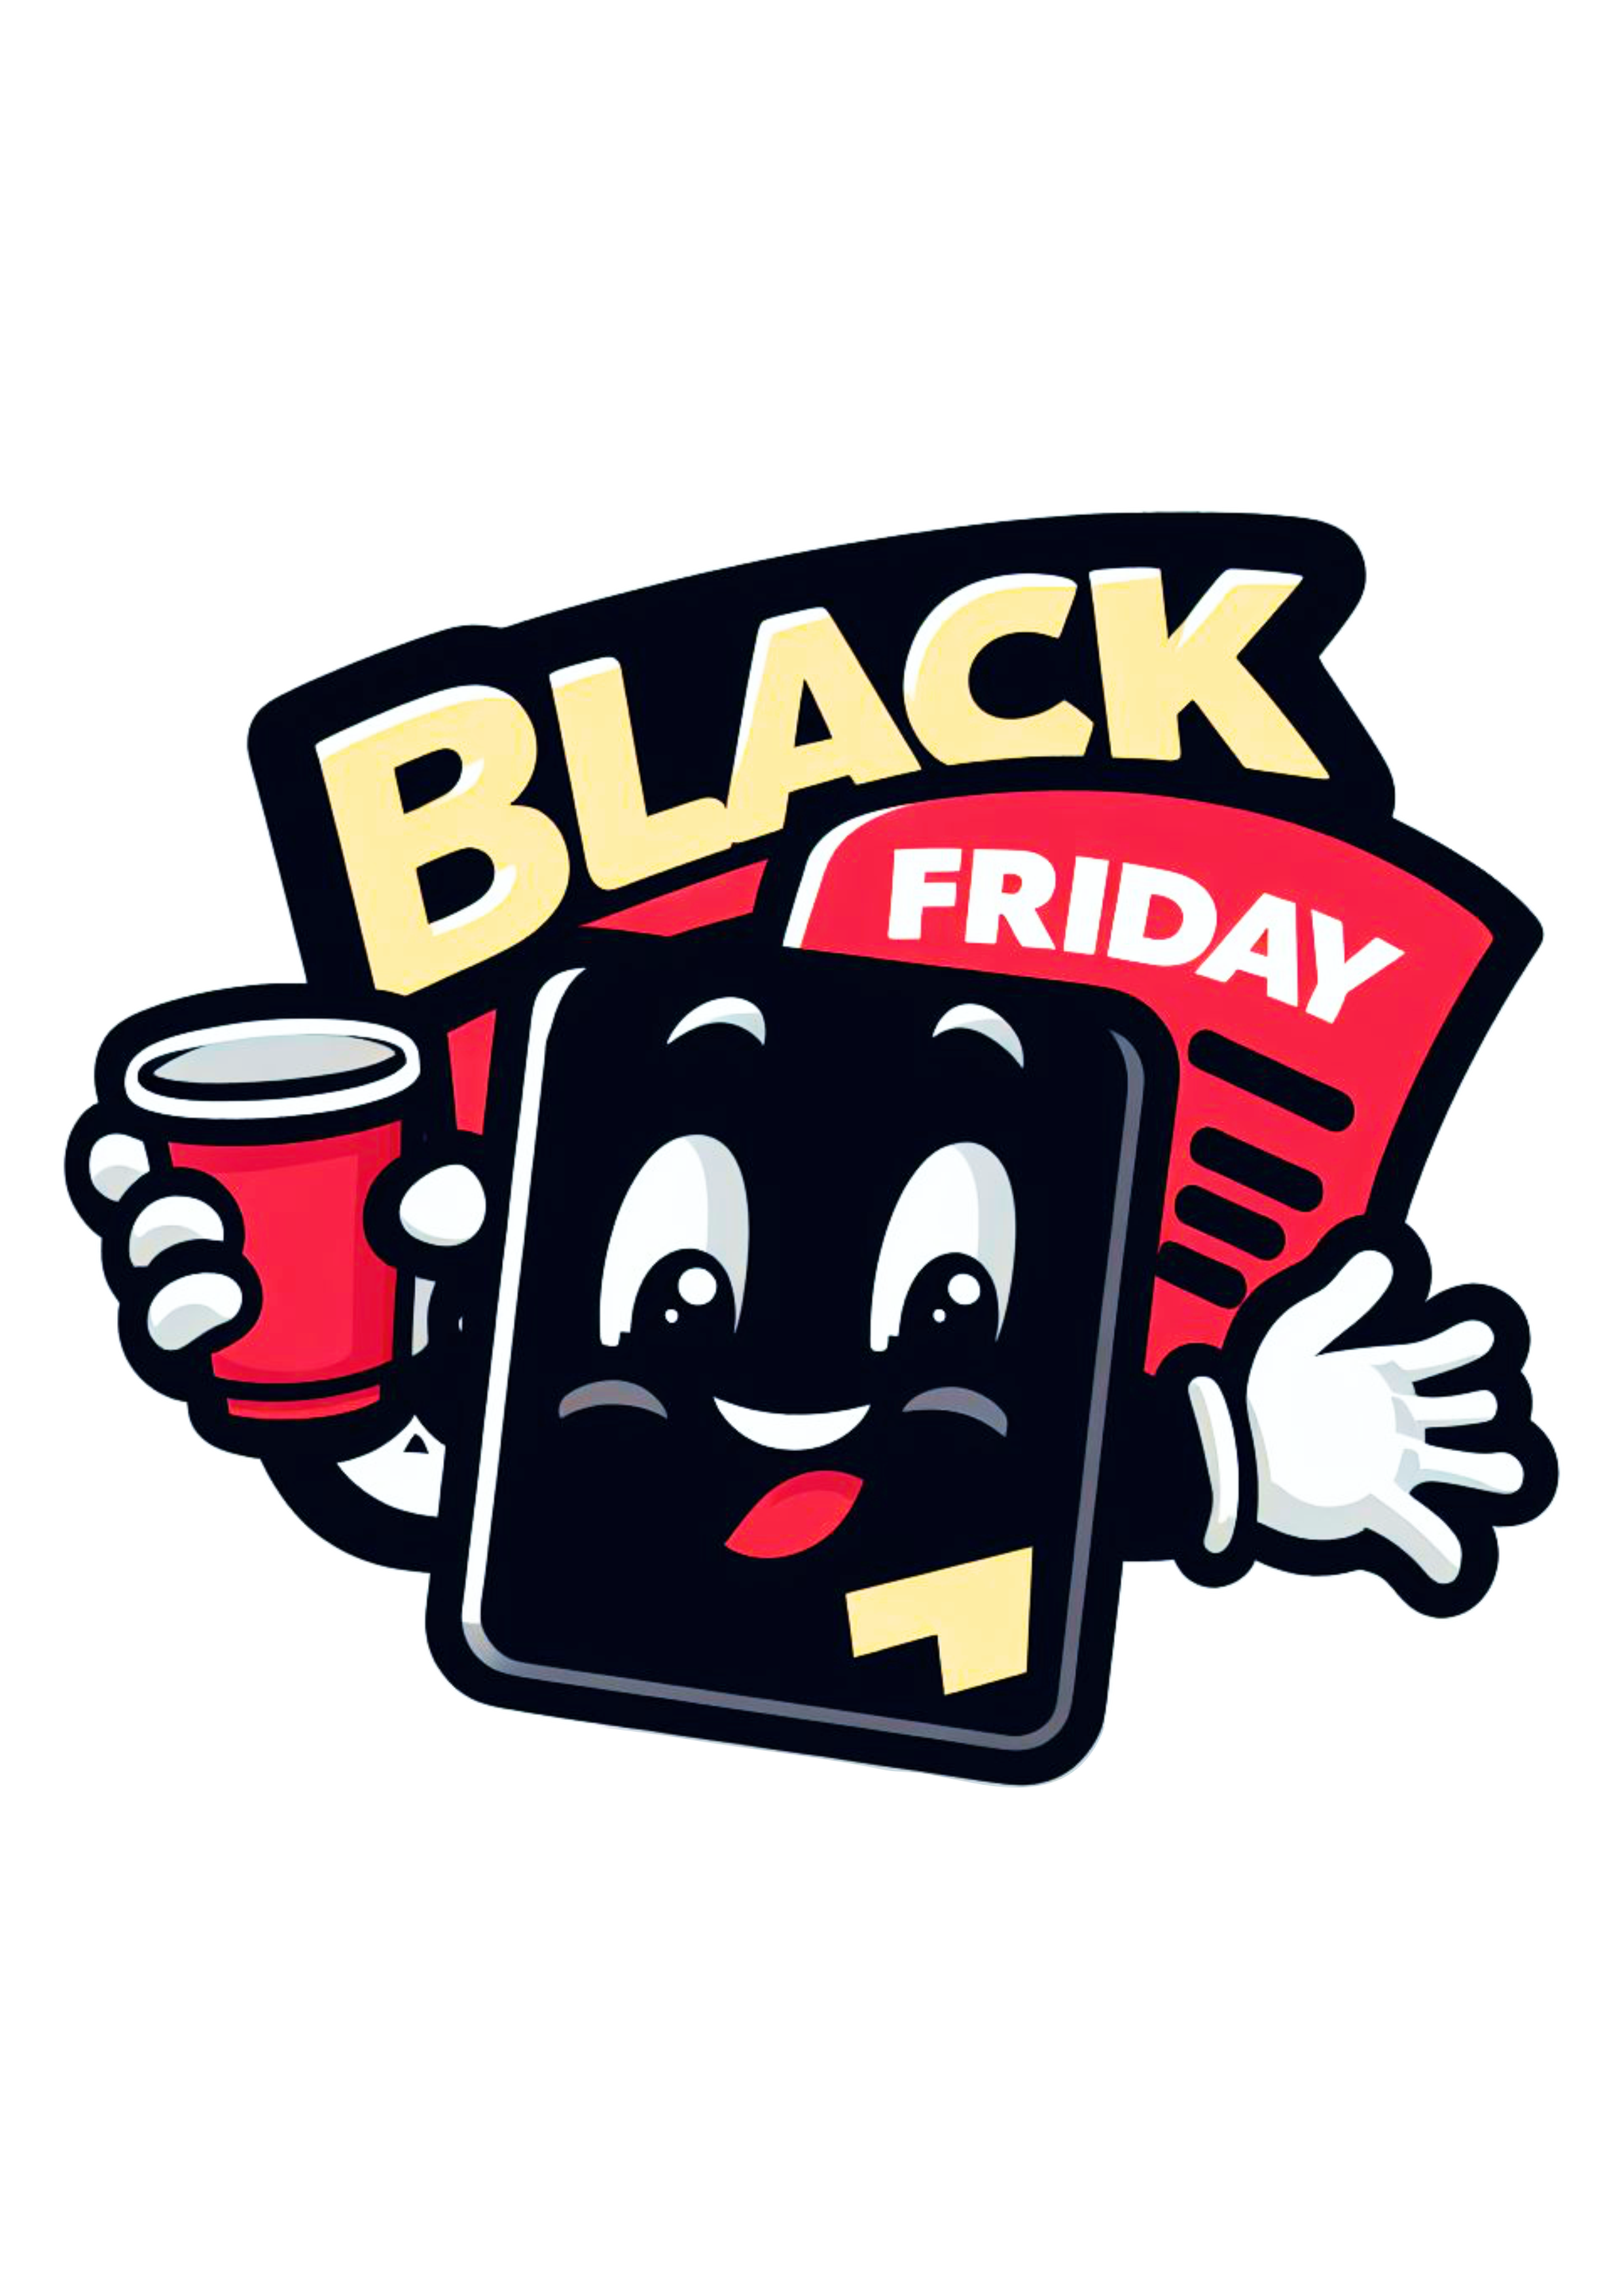 Black Friday logomarca bonequinho engraçado png